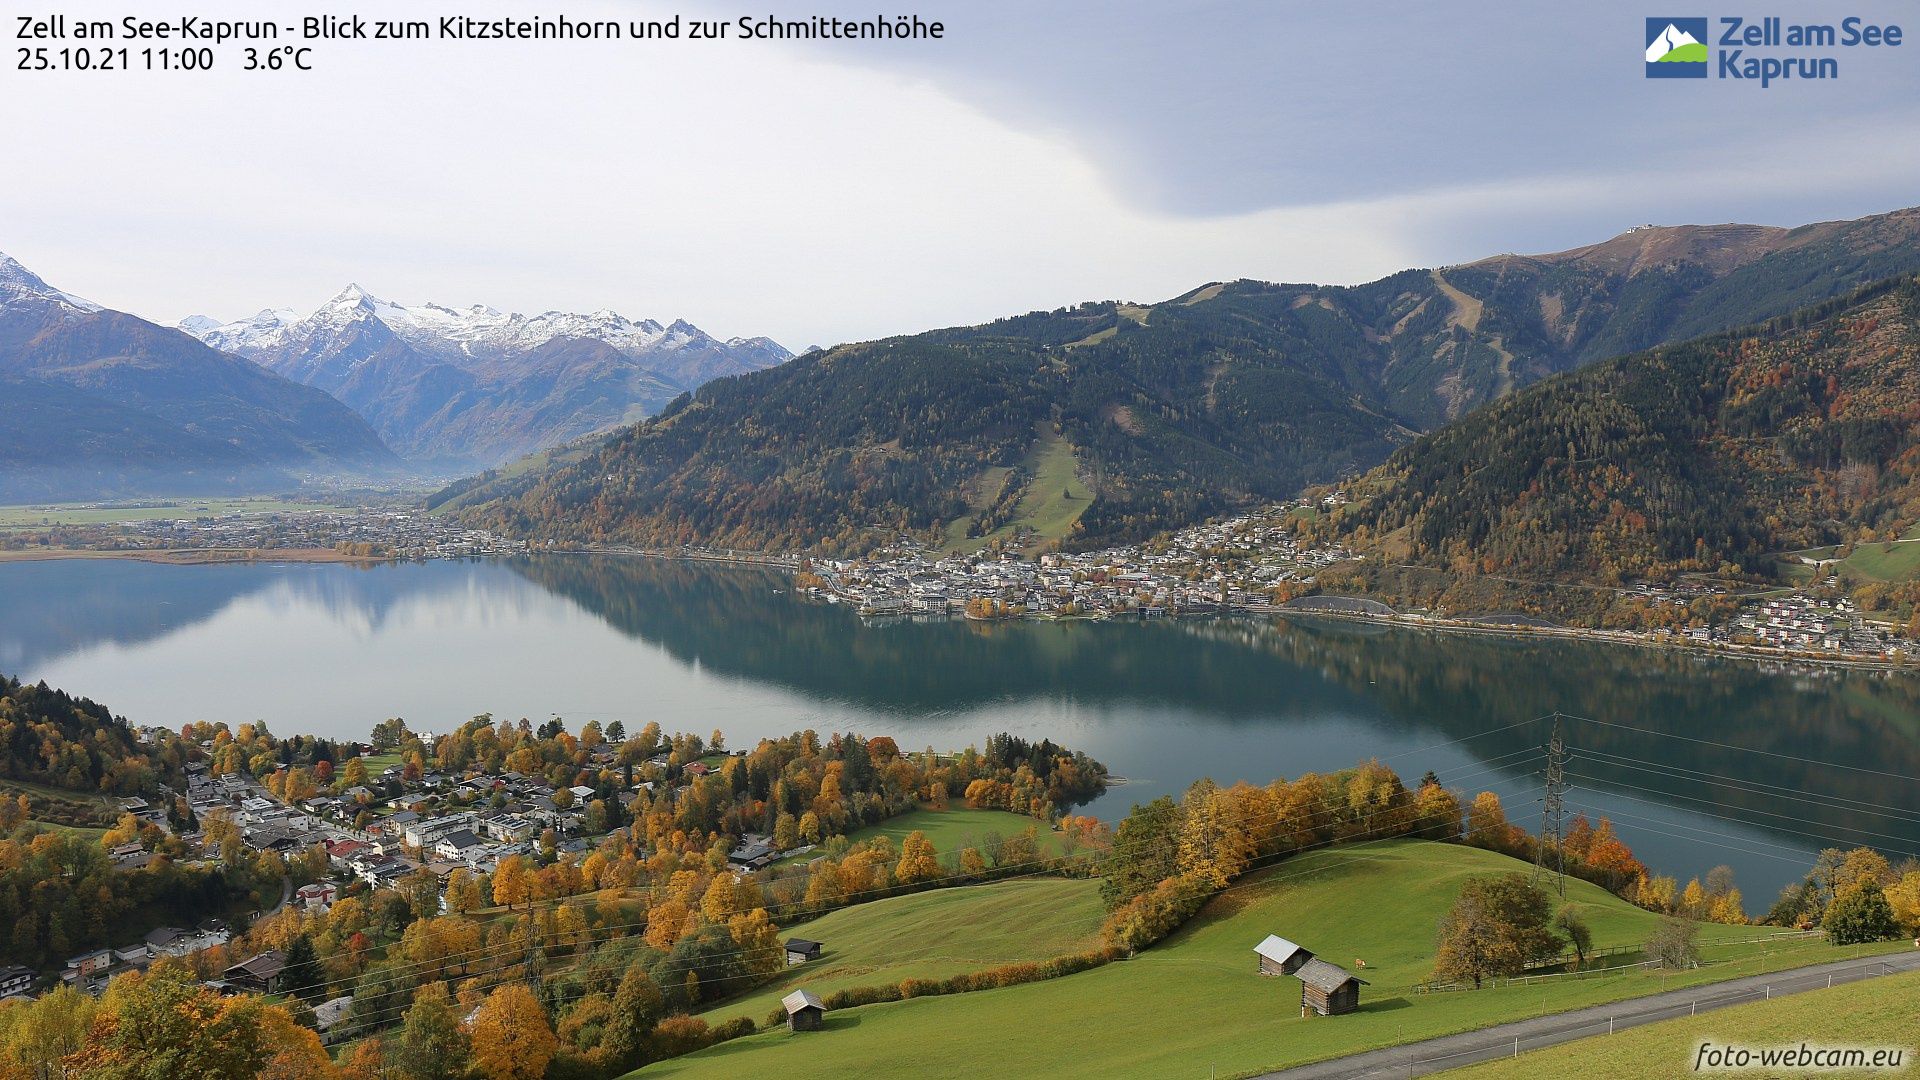 Volop herfst in de Alpen, zoals hier in Zell am See (foto-webcam.eu)